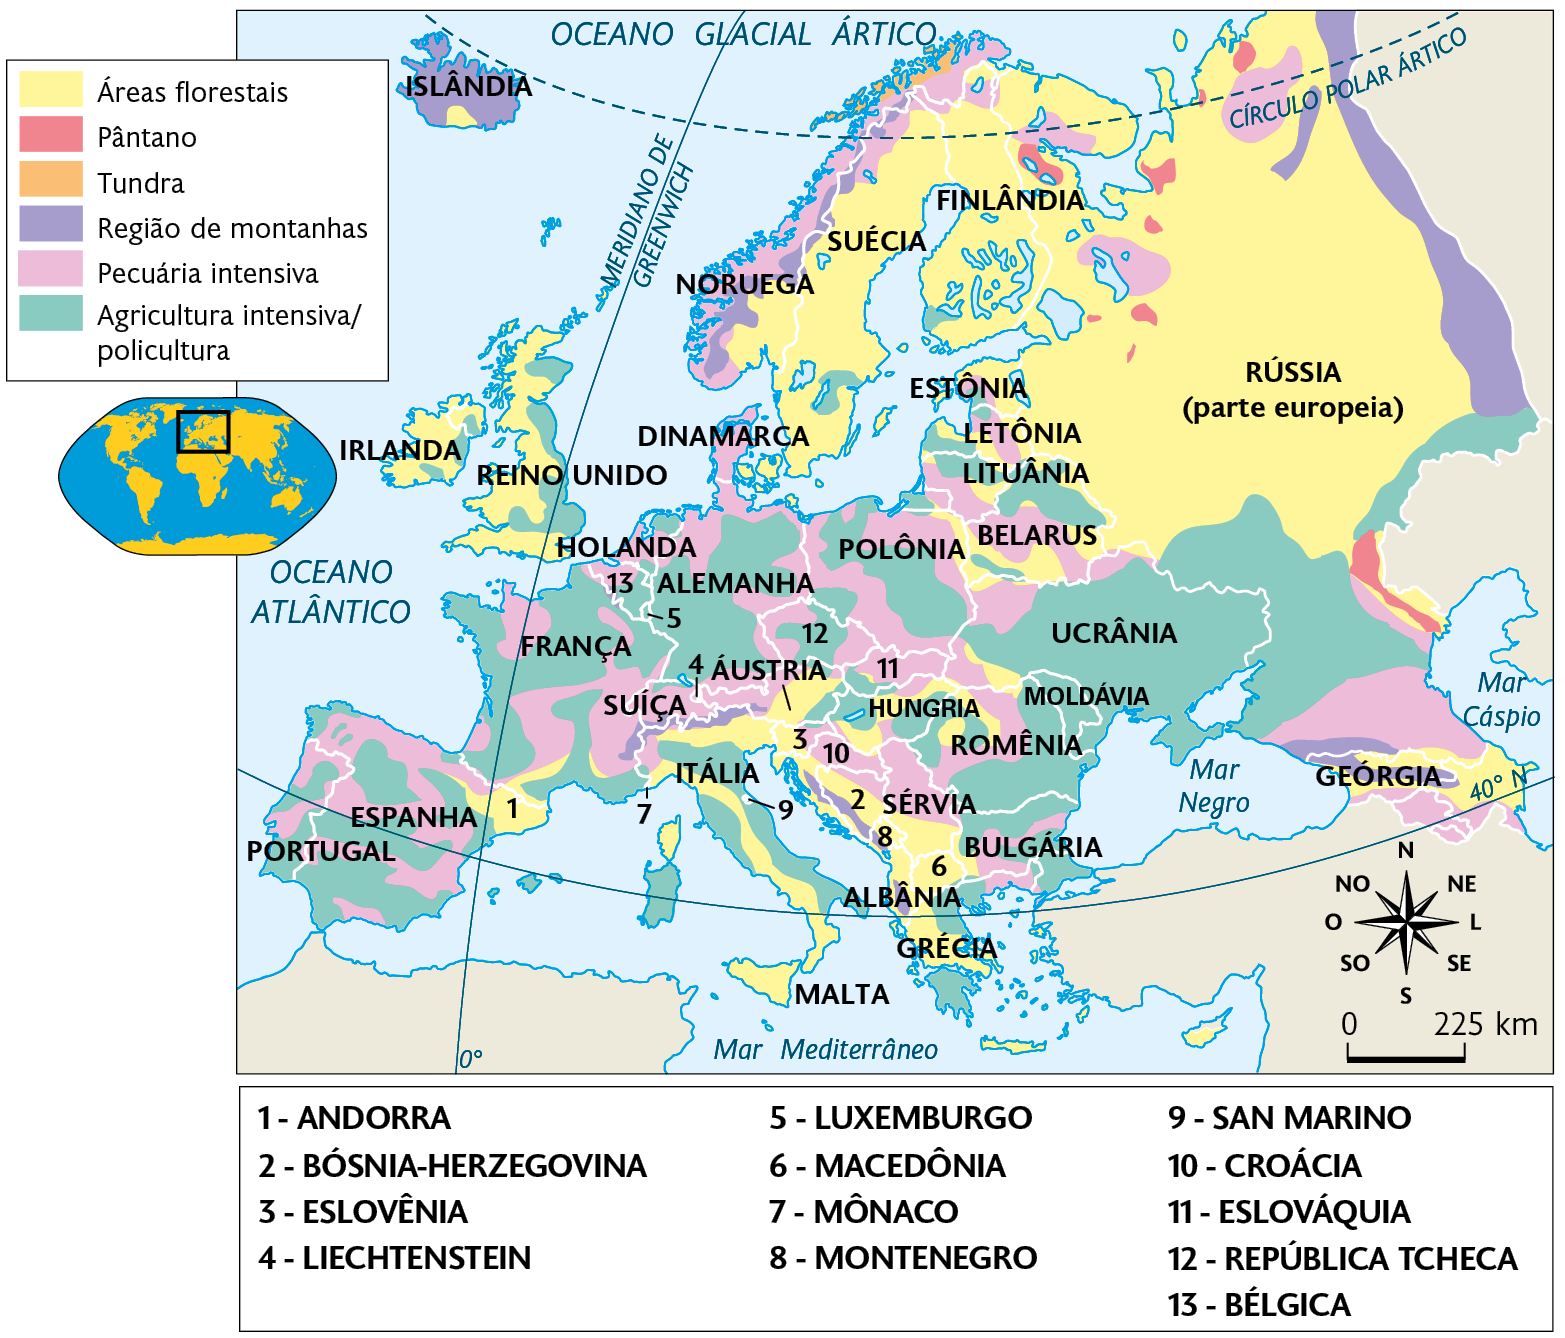 Mapa. Atividades agropecuárias na Europa (2021). Áreas florestais: sudeste da Noruega, Suécia e Finlândia, e grande parte da Rússia (parte europeia), oeste da Irlanda e do Reino Unido, Andorra, oeste da Itália, sul da Áustria, oeste da Eslovênia, centro da Bósnia-Herzegovina, leste de Montenegro, sul da Sérvia, Macedônia, leste da Albânia, oeste da Grécia, norte e centro da Geórgia, sul de Belarus, Lituânia e Letônia. Pântano: sul da Rússia (parte europeia). Tundra: norte da Noruega. Região de montanhas: sul da Noruega, norte da Islândia, leste e sul da Rússia e sul da Geórgia. Pecuária intensiva: costa da Noruega e áreas dispersas entre Portugal, Espanha, França, Alemanha, Áustria, Suíça, Polônia, Belarus, Romênia, Sérvia, Bulgária, Holanda e sul da Rússia. Agricultura intensiva/policultura: Áreas dispersas entre Portugal, Irlanda, Reino Unido, Espanha, França, Alemanha, Áustria, Suíça, Polônia, Belarus, Romênia, Sérvia, Bulgária, Holanda Ucrânia, Moldávia, Itália e sul da Rússia. À esquerda, mapa de localização, planisfério destacando a região descrita. No canto inferior direito, a rosa dos ventos e a escala: 225 quilômetros por centímetro.